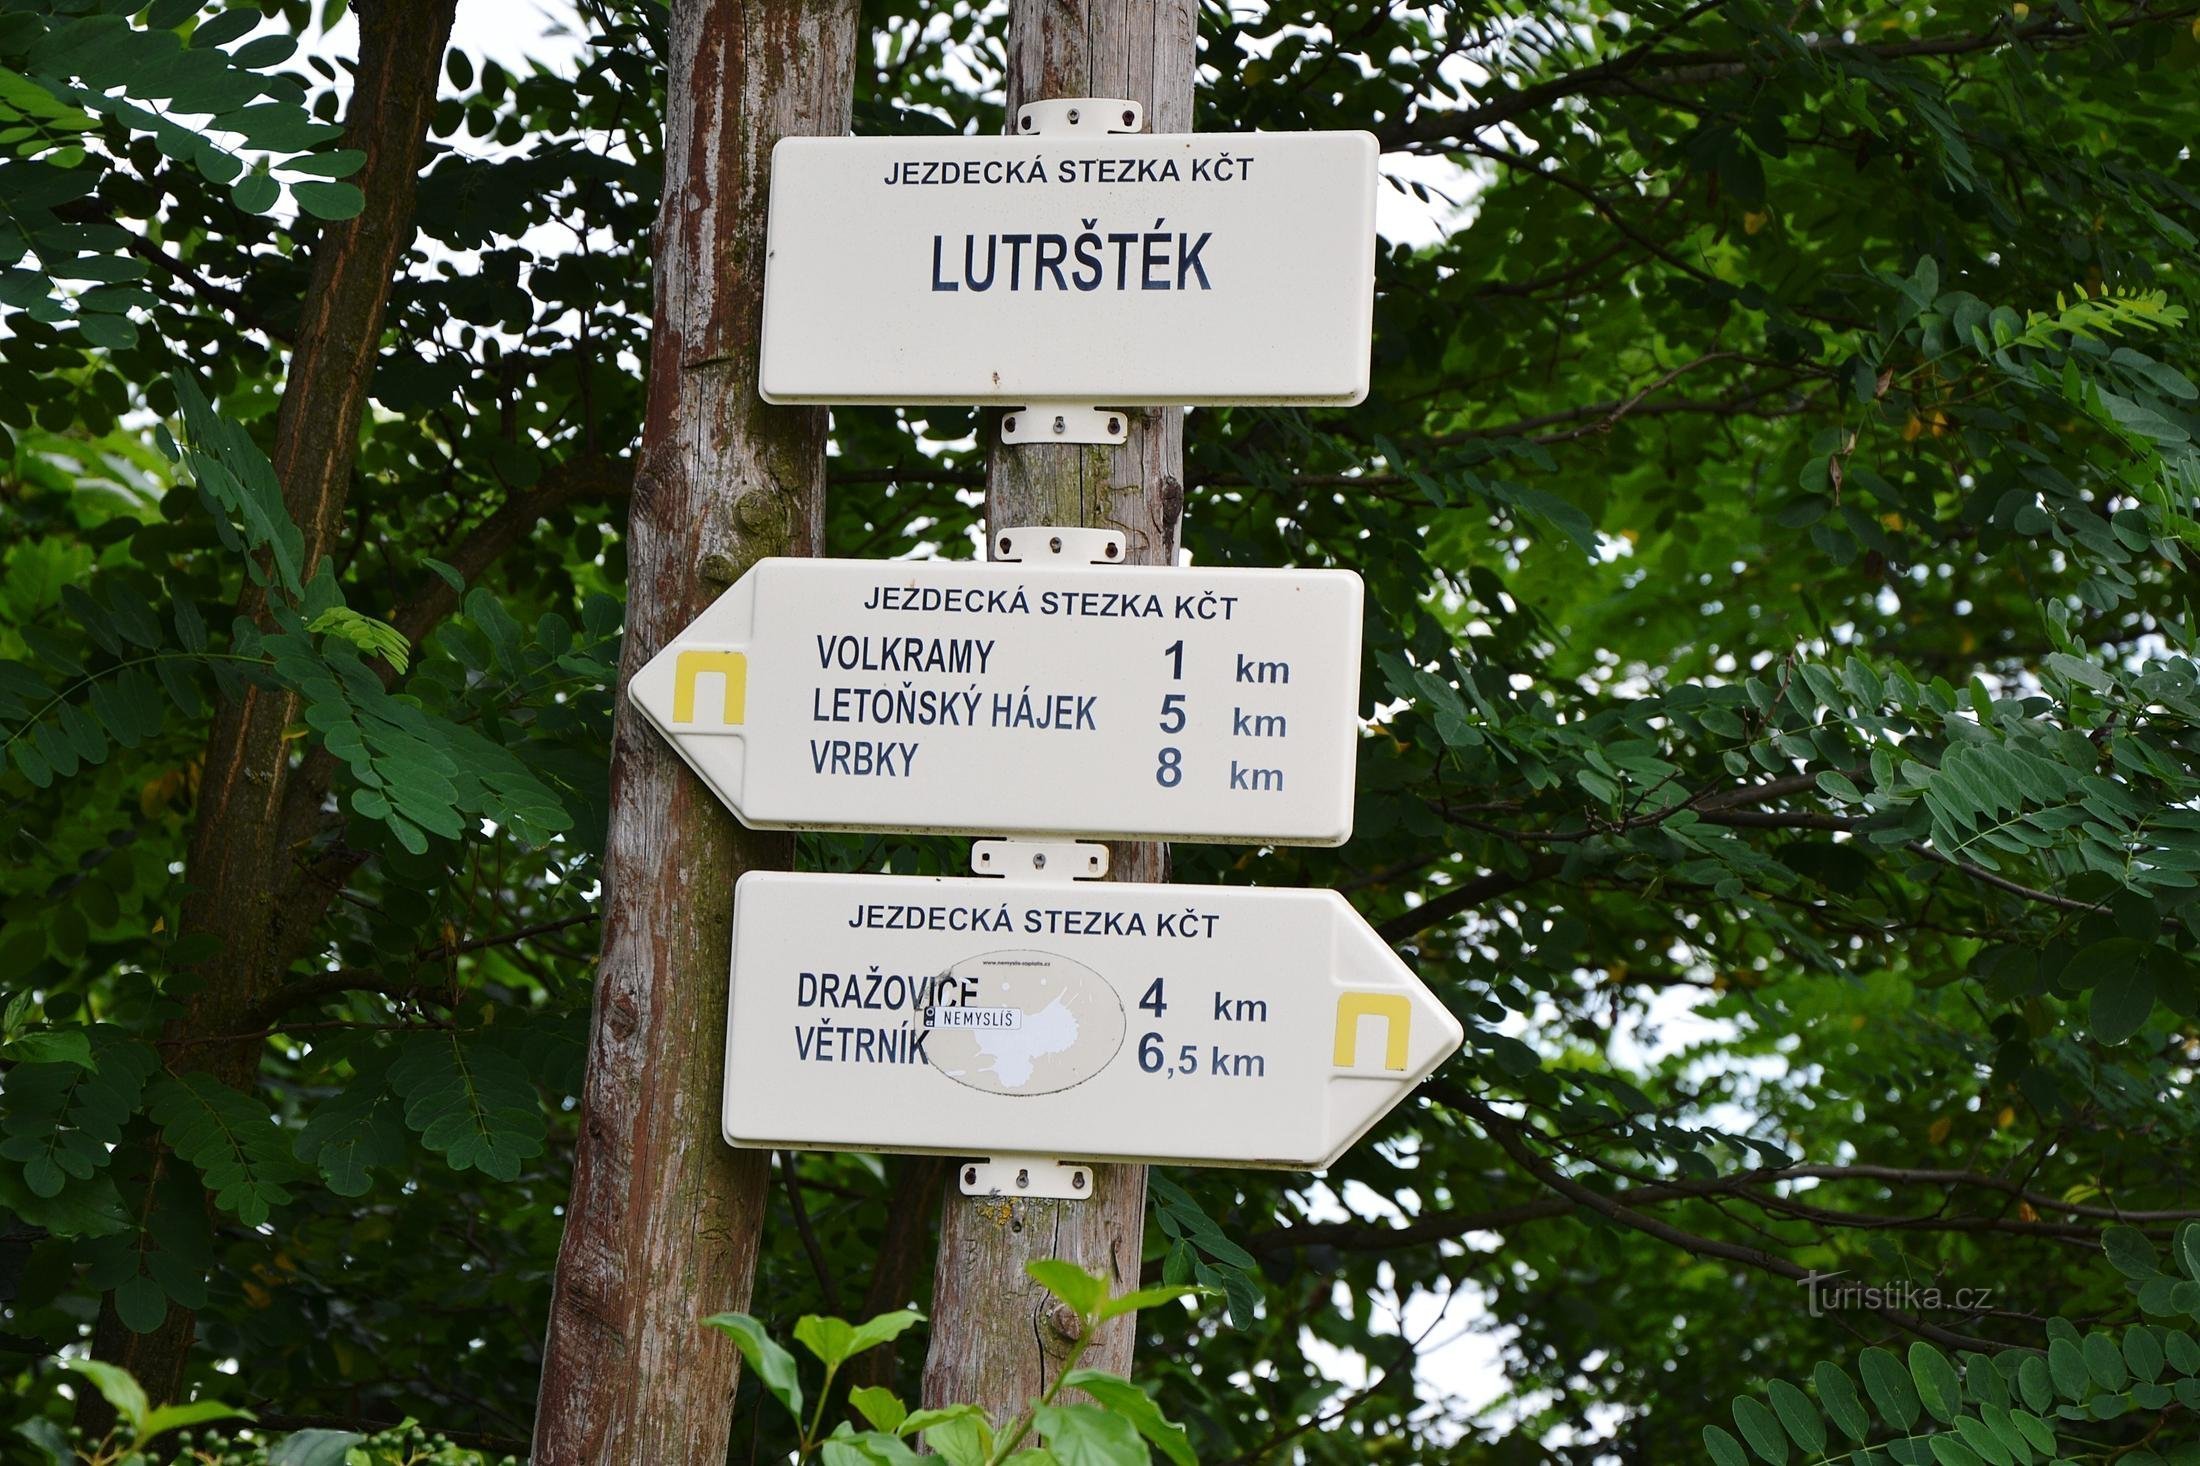 biển chỉ dẫn gần Lutrštek